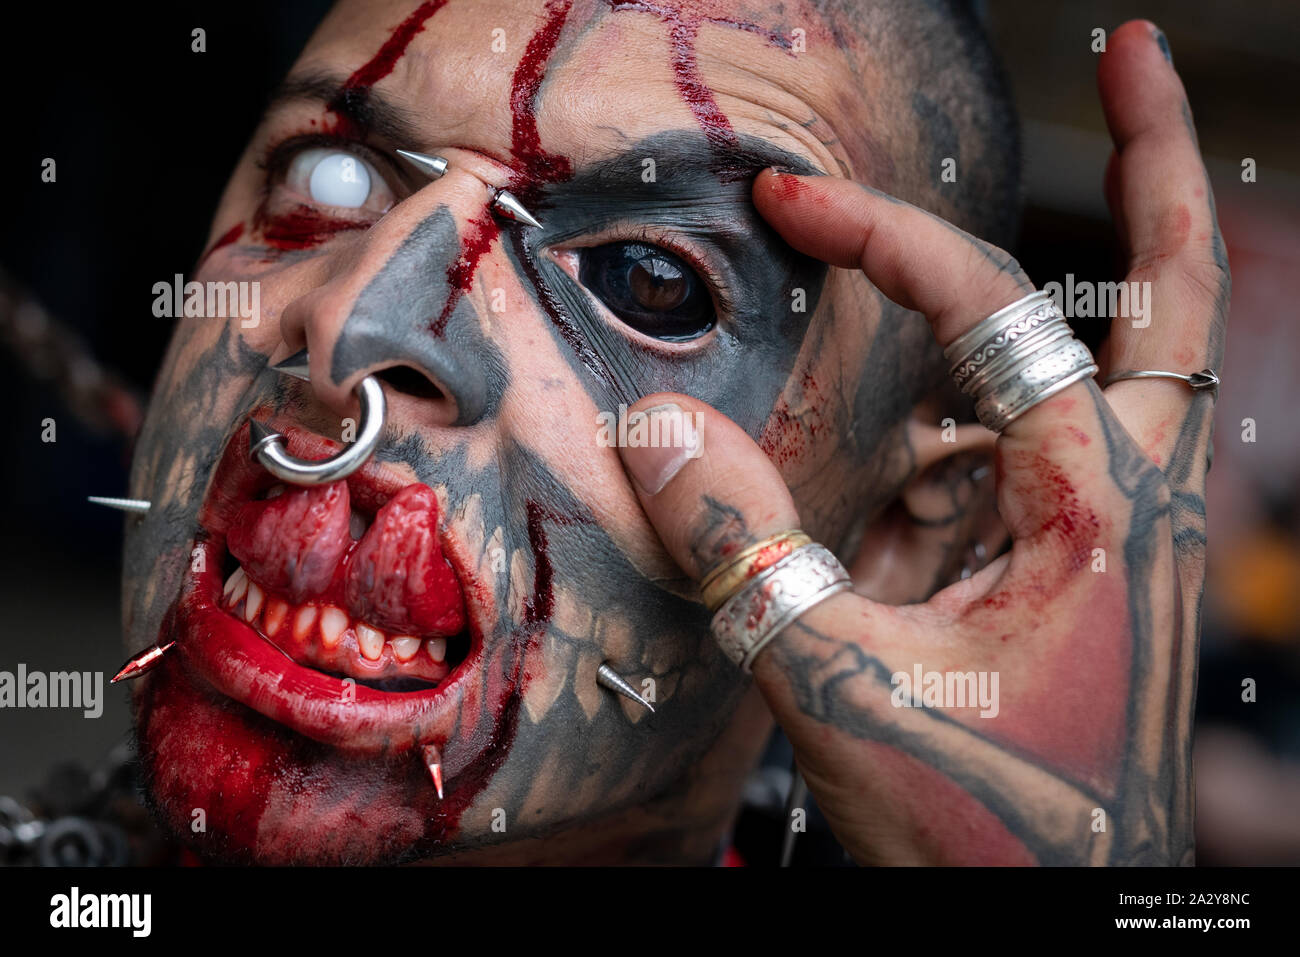 Le corps extrême-modifications 'Zombiepunk' assiste à la 15e Convention de Tatouage à Londres, Royaume-Uni. Dock du tabac Banque D'Images